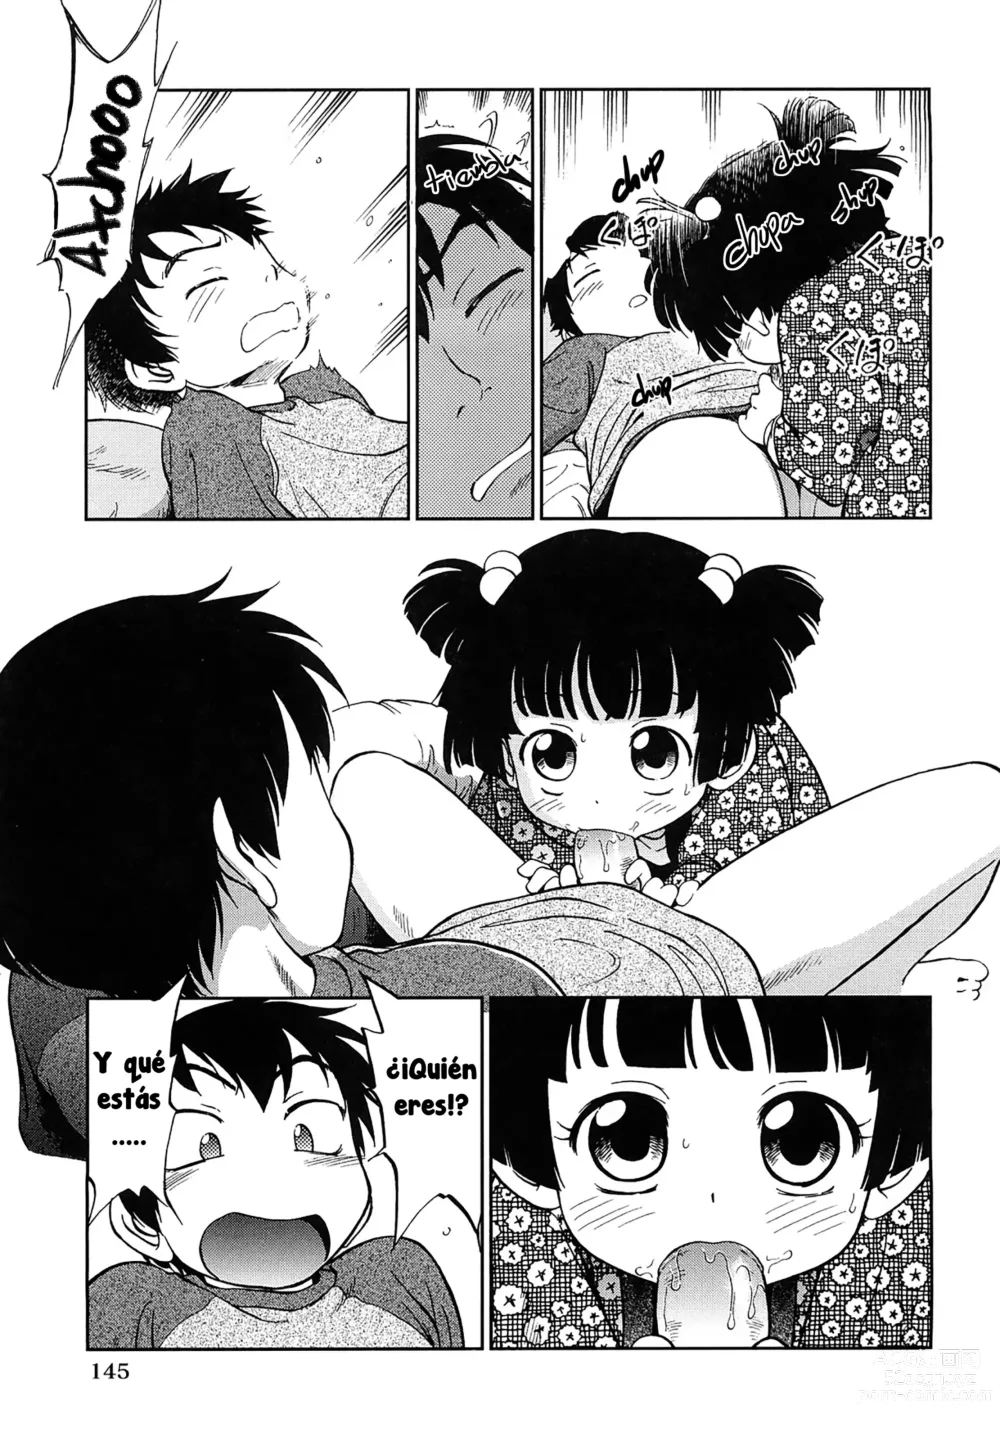 Page 9 of manga 1LDK Hi atari ryoukou warabe tsuki